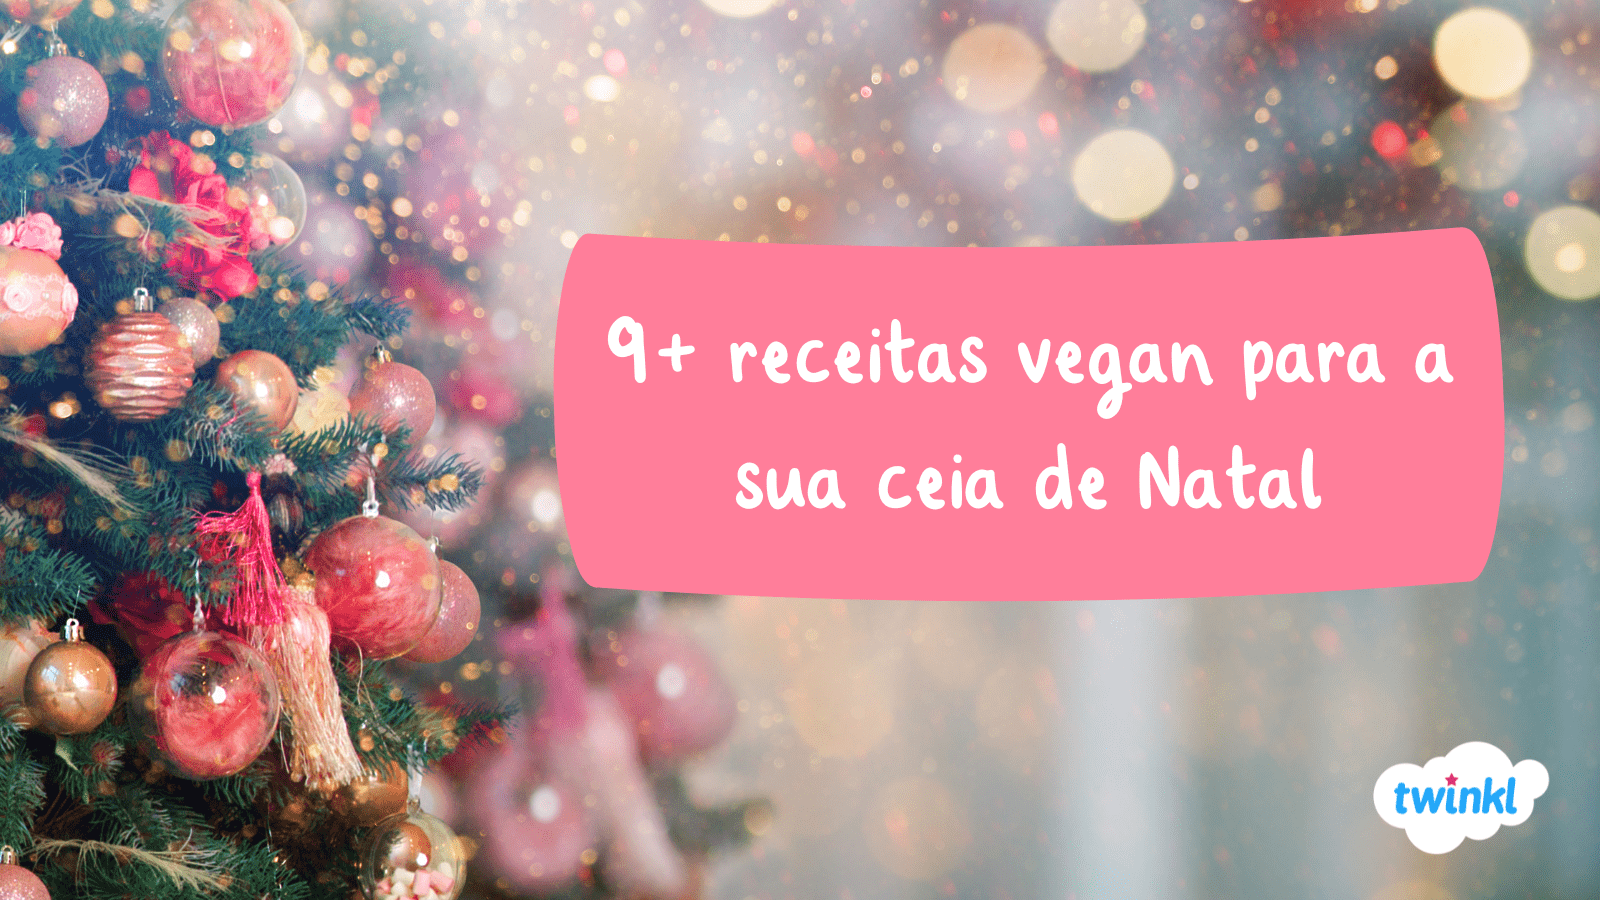 9+ receitas vegan para inspirar a sua ceia de Natal - Twinkl